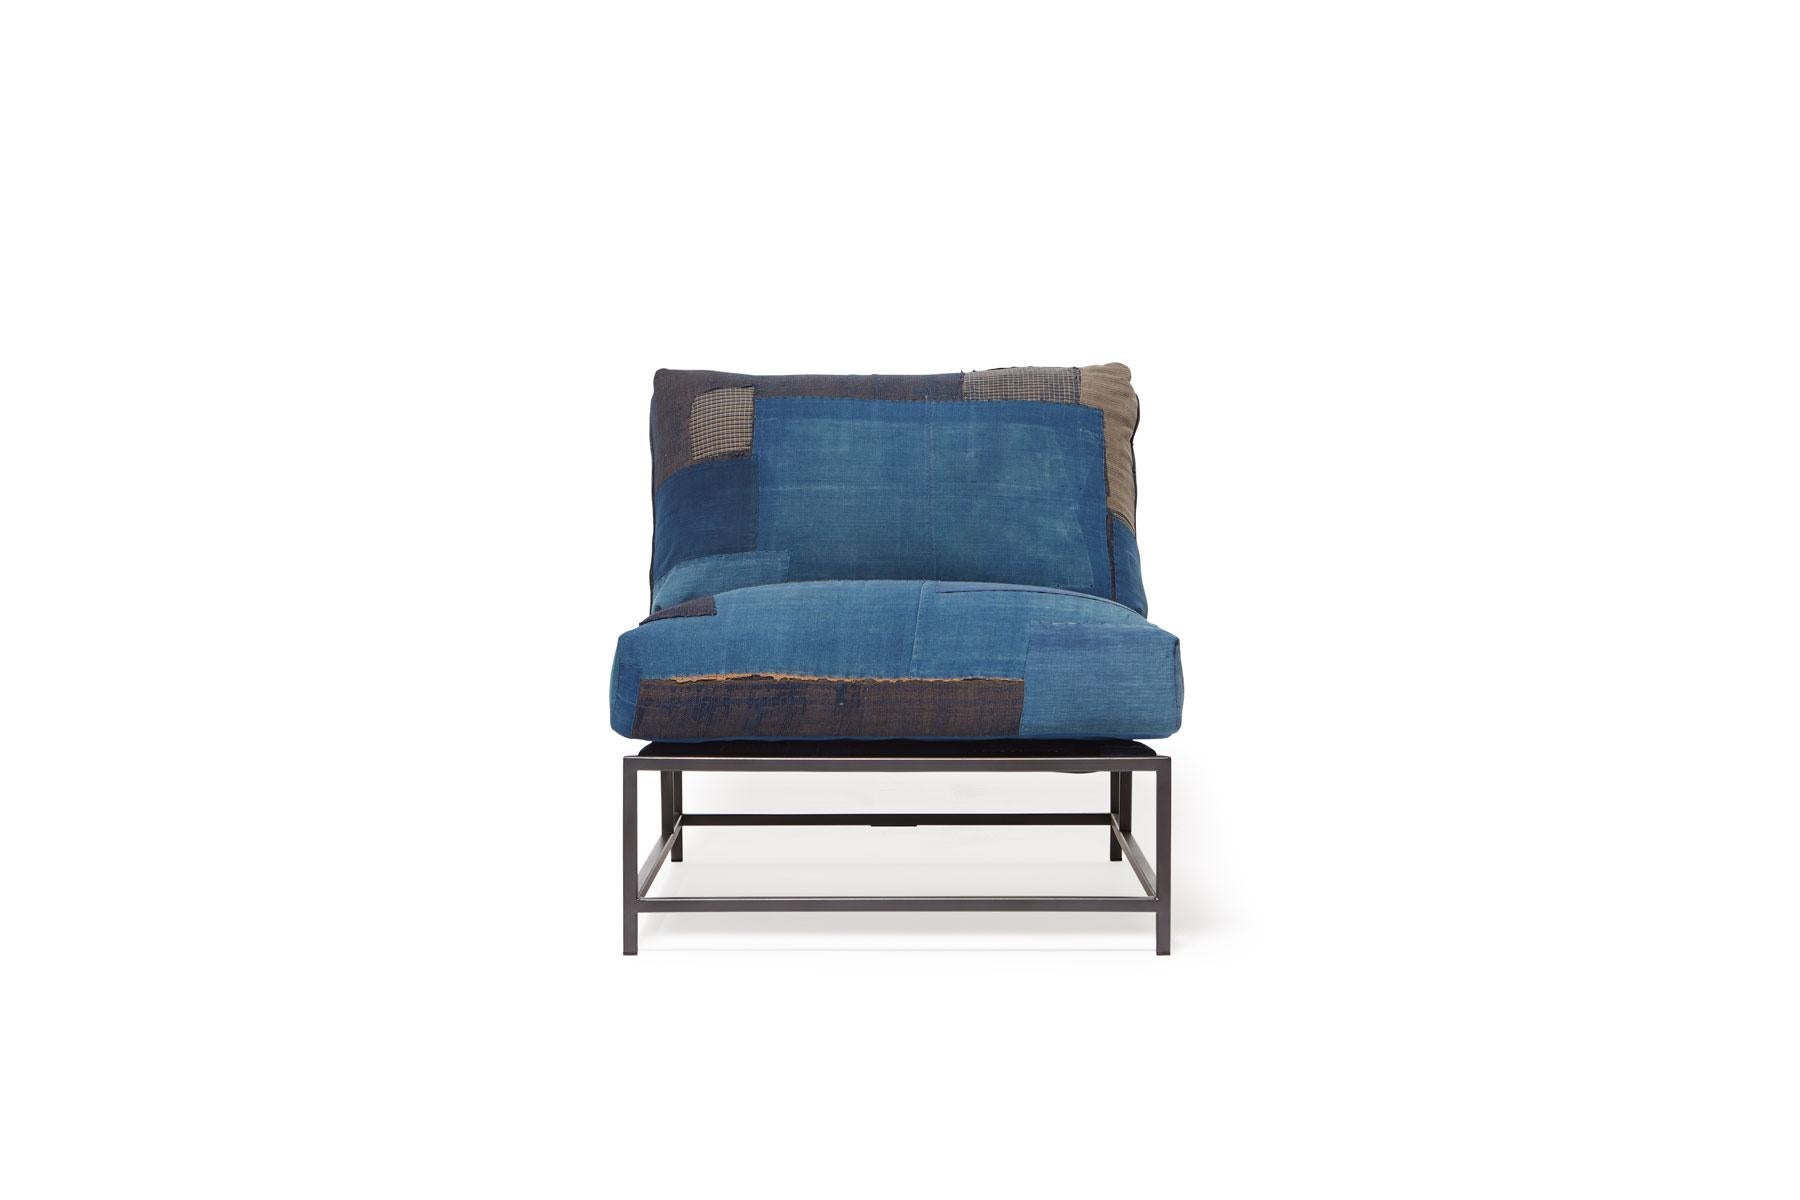 Der Inheritance Chair von Stephen Kenn ist ebenso bequem wie einzigartig. Das Design zeichnet sich durch eine exponierte Konstruktion aus, die aus drei Elementen besteht: einem Stahlrahmen, einer weichen Polsterung und stützenden Gurten. Der tiefe